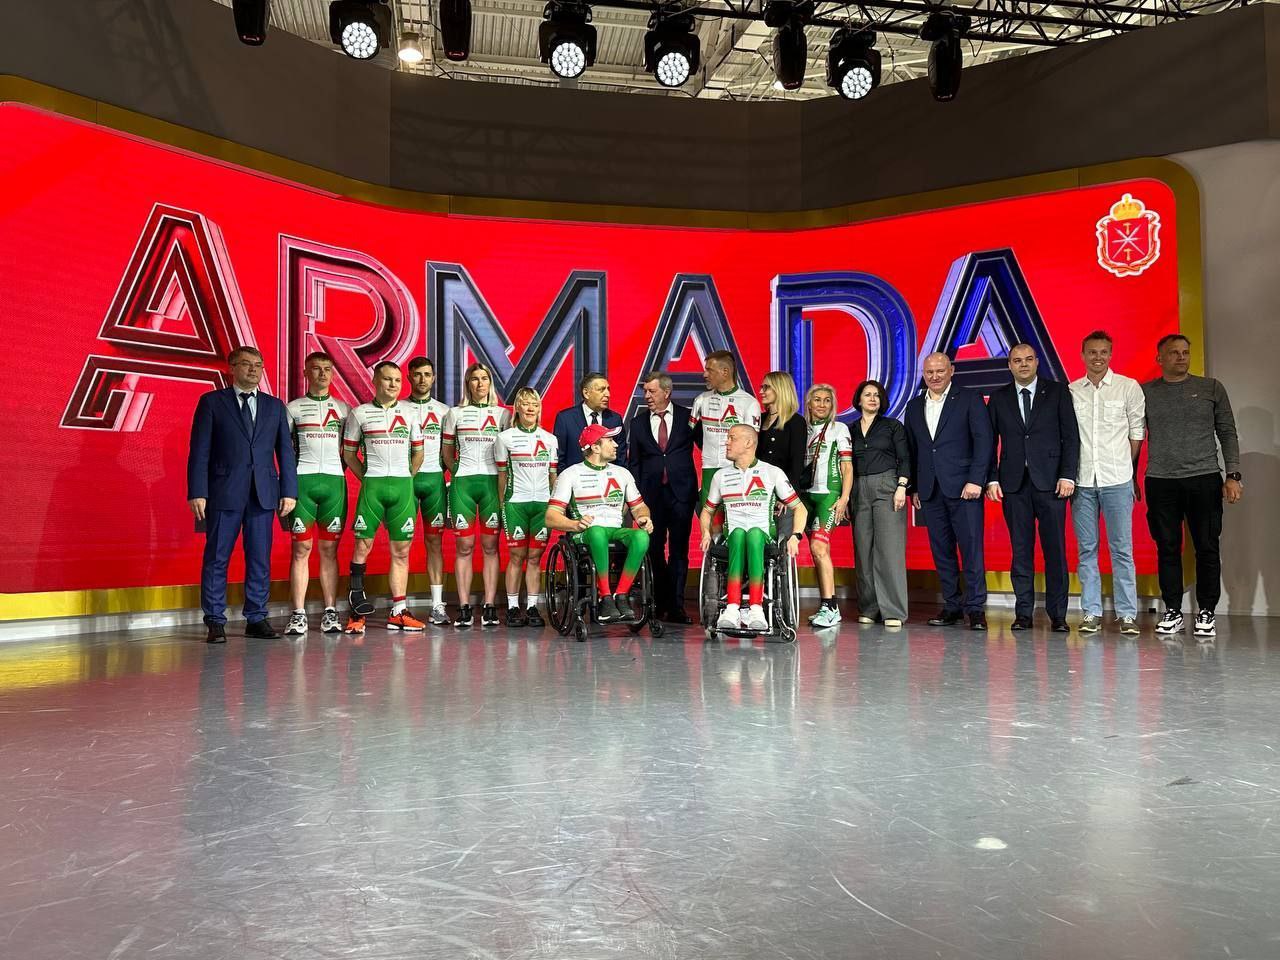 На выставке "Россия" состоялась презентация паралимпийской сборной из Тулы "Armada Paracycling Team"